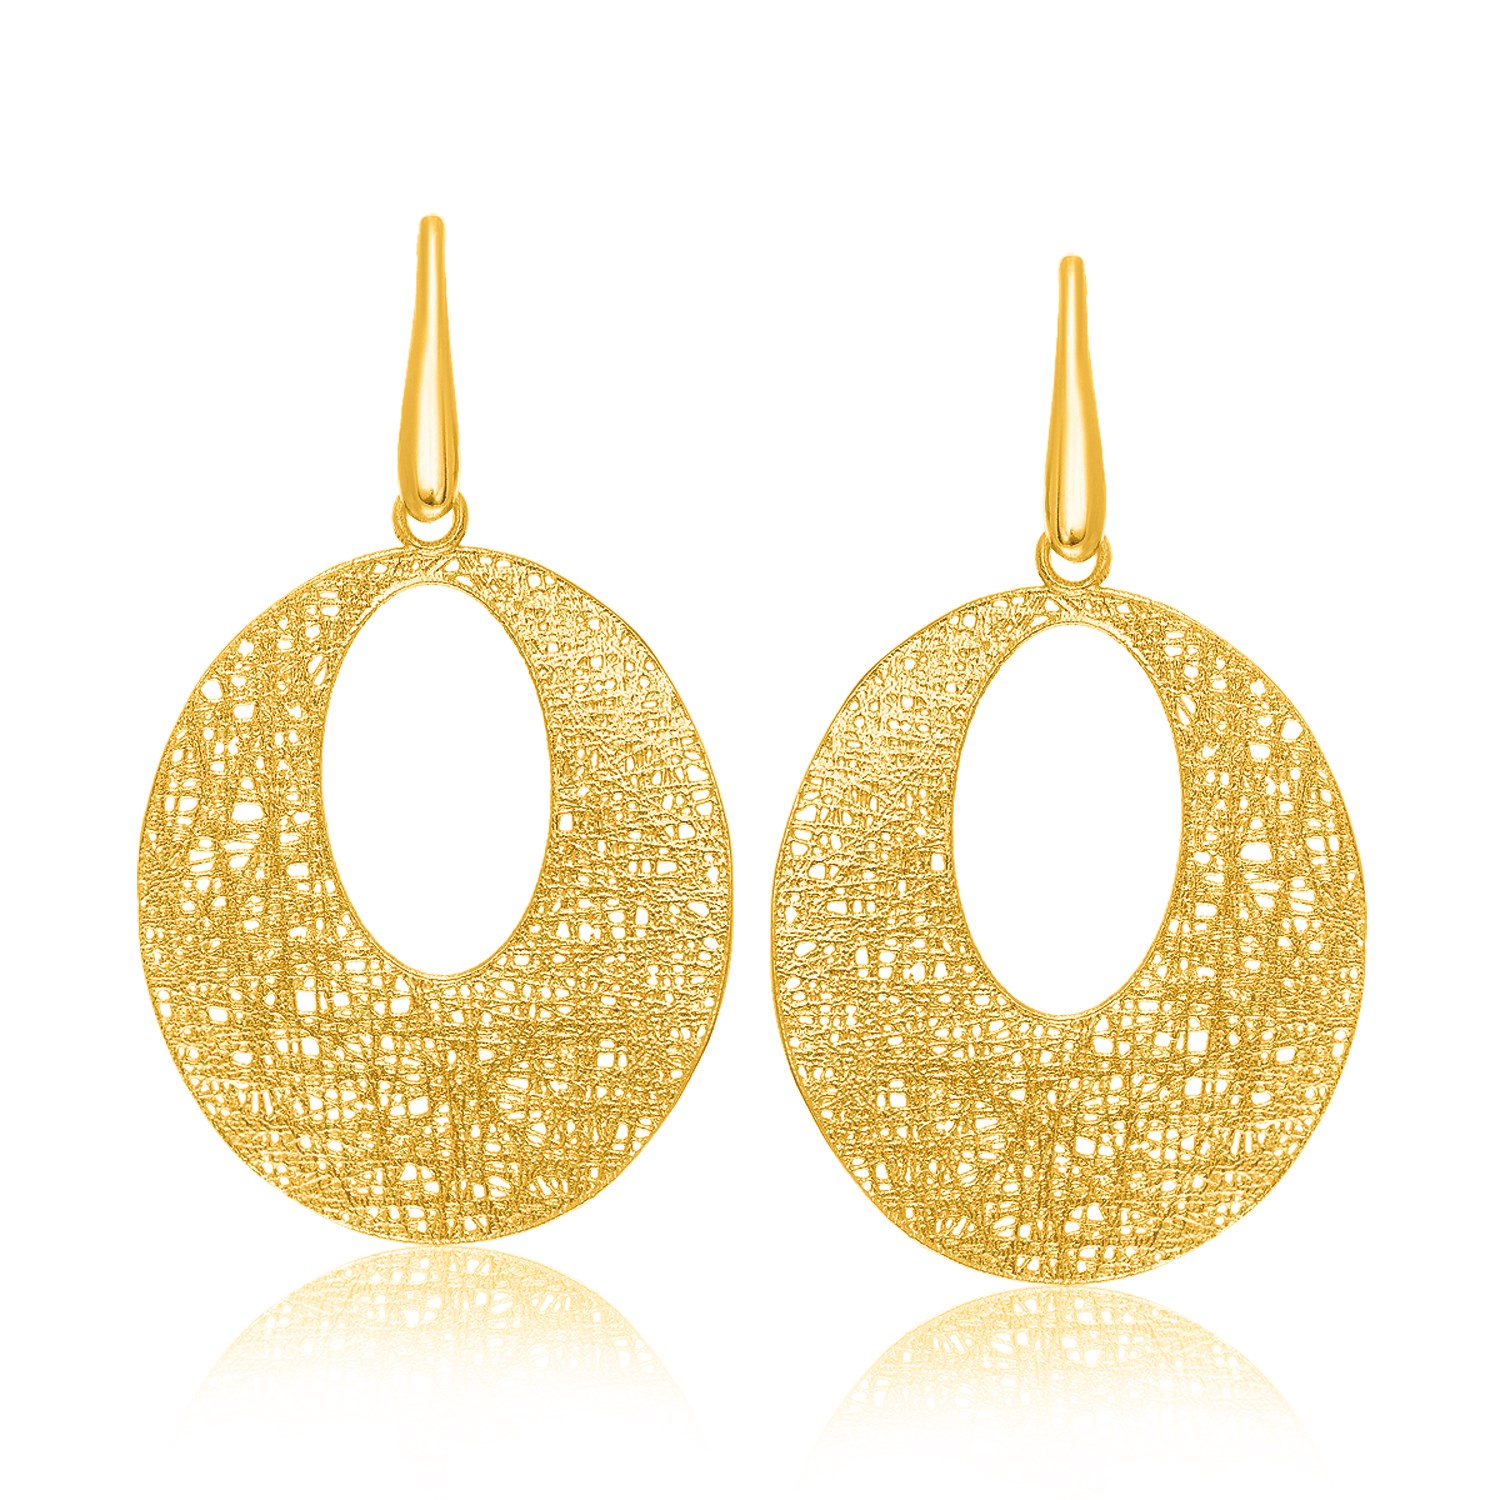 Open Oval Wire Mesh Earrings in 14k Yellow Gold - Richard Cannon Jewelry